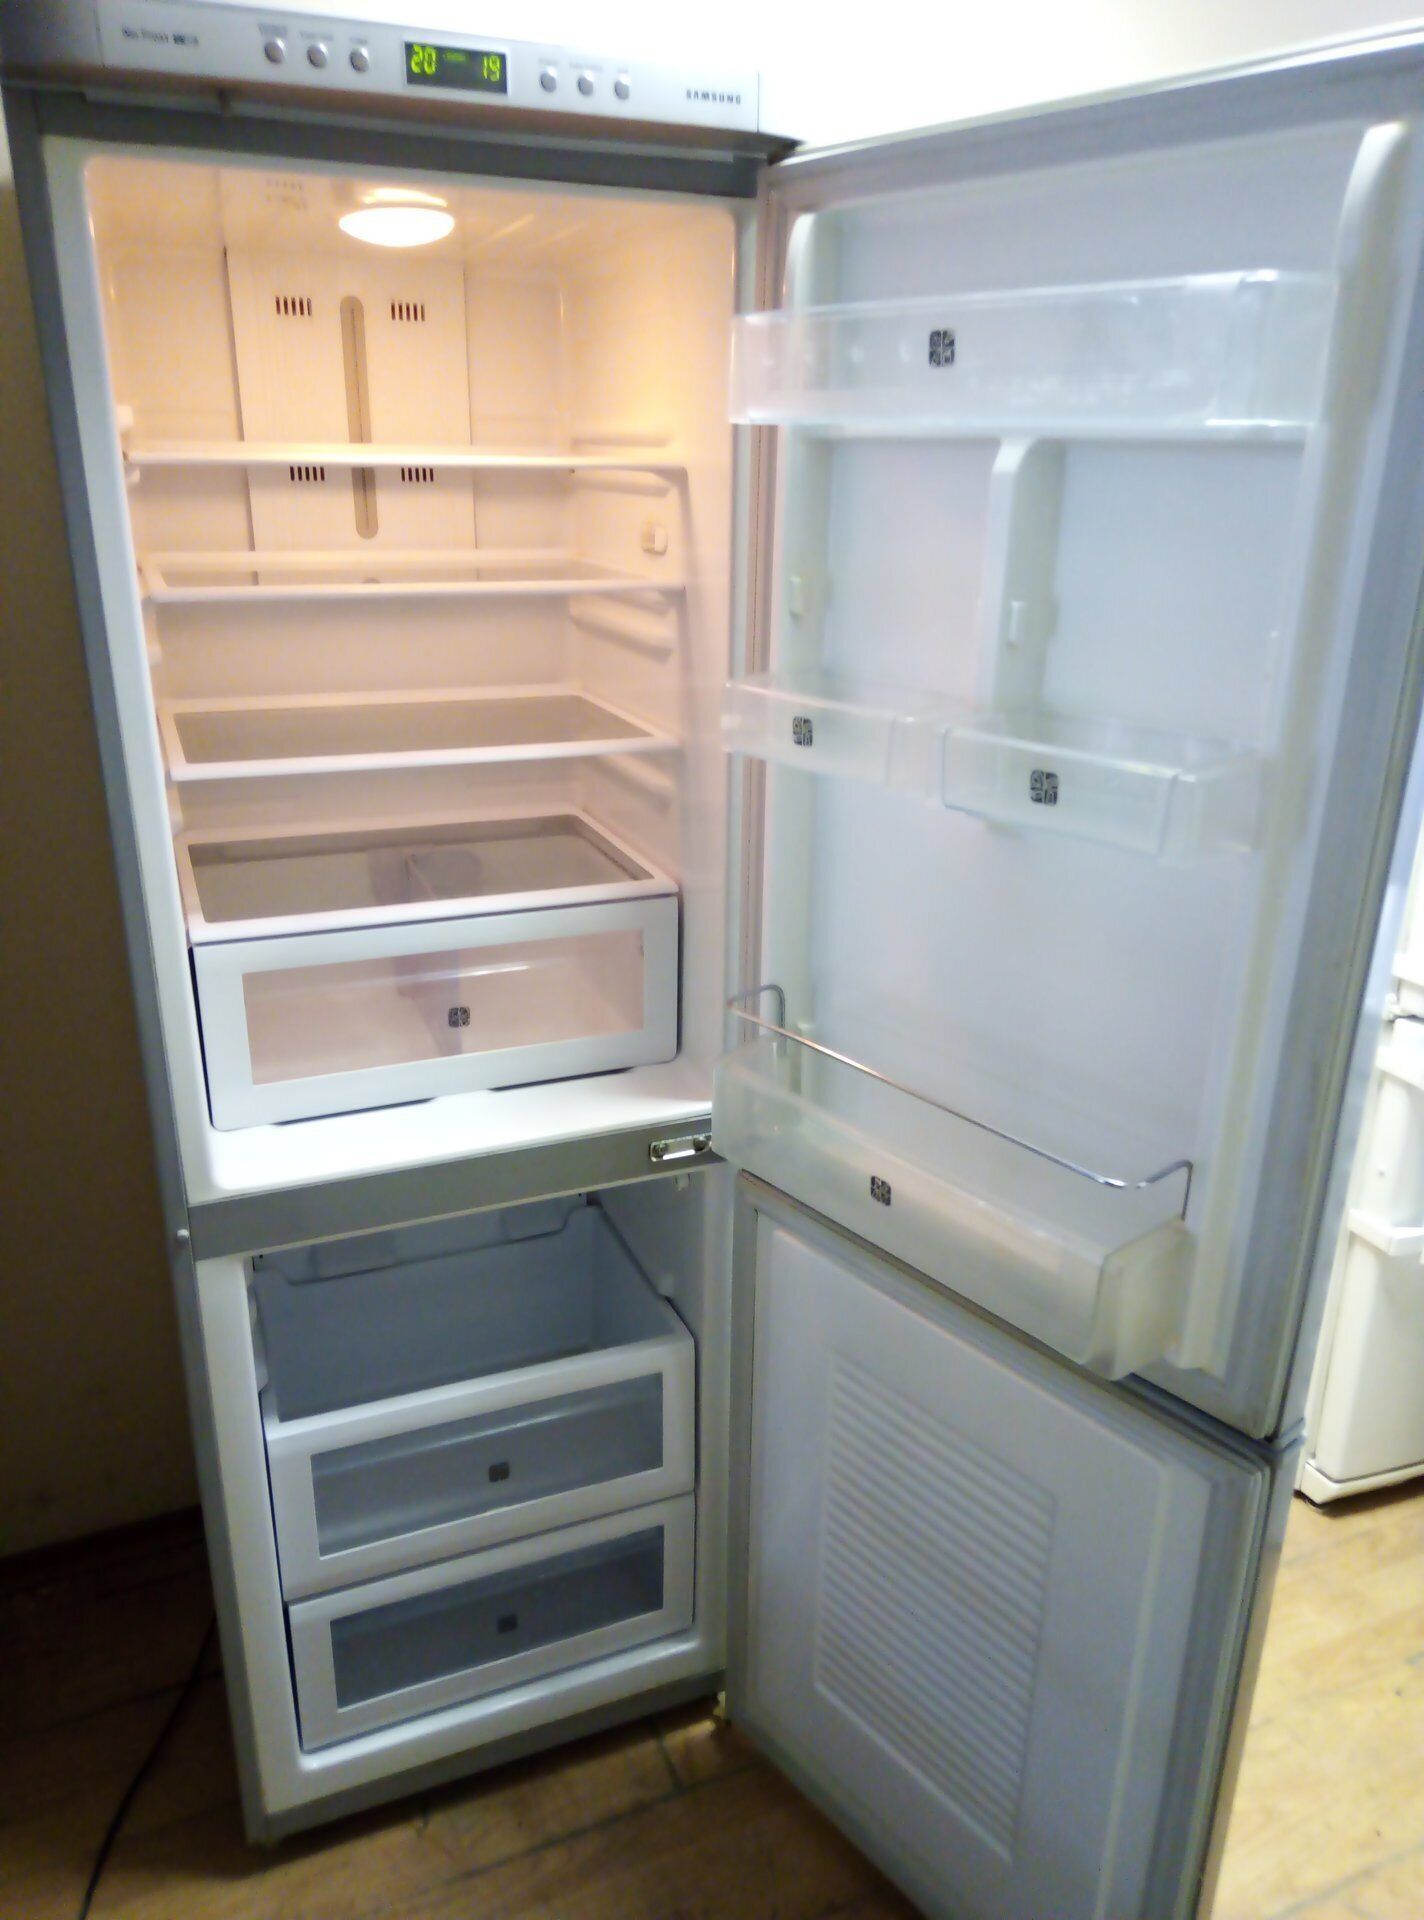 Ремонт Холодильников Быстро | Качество и Гарантия